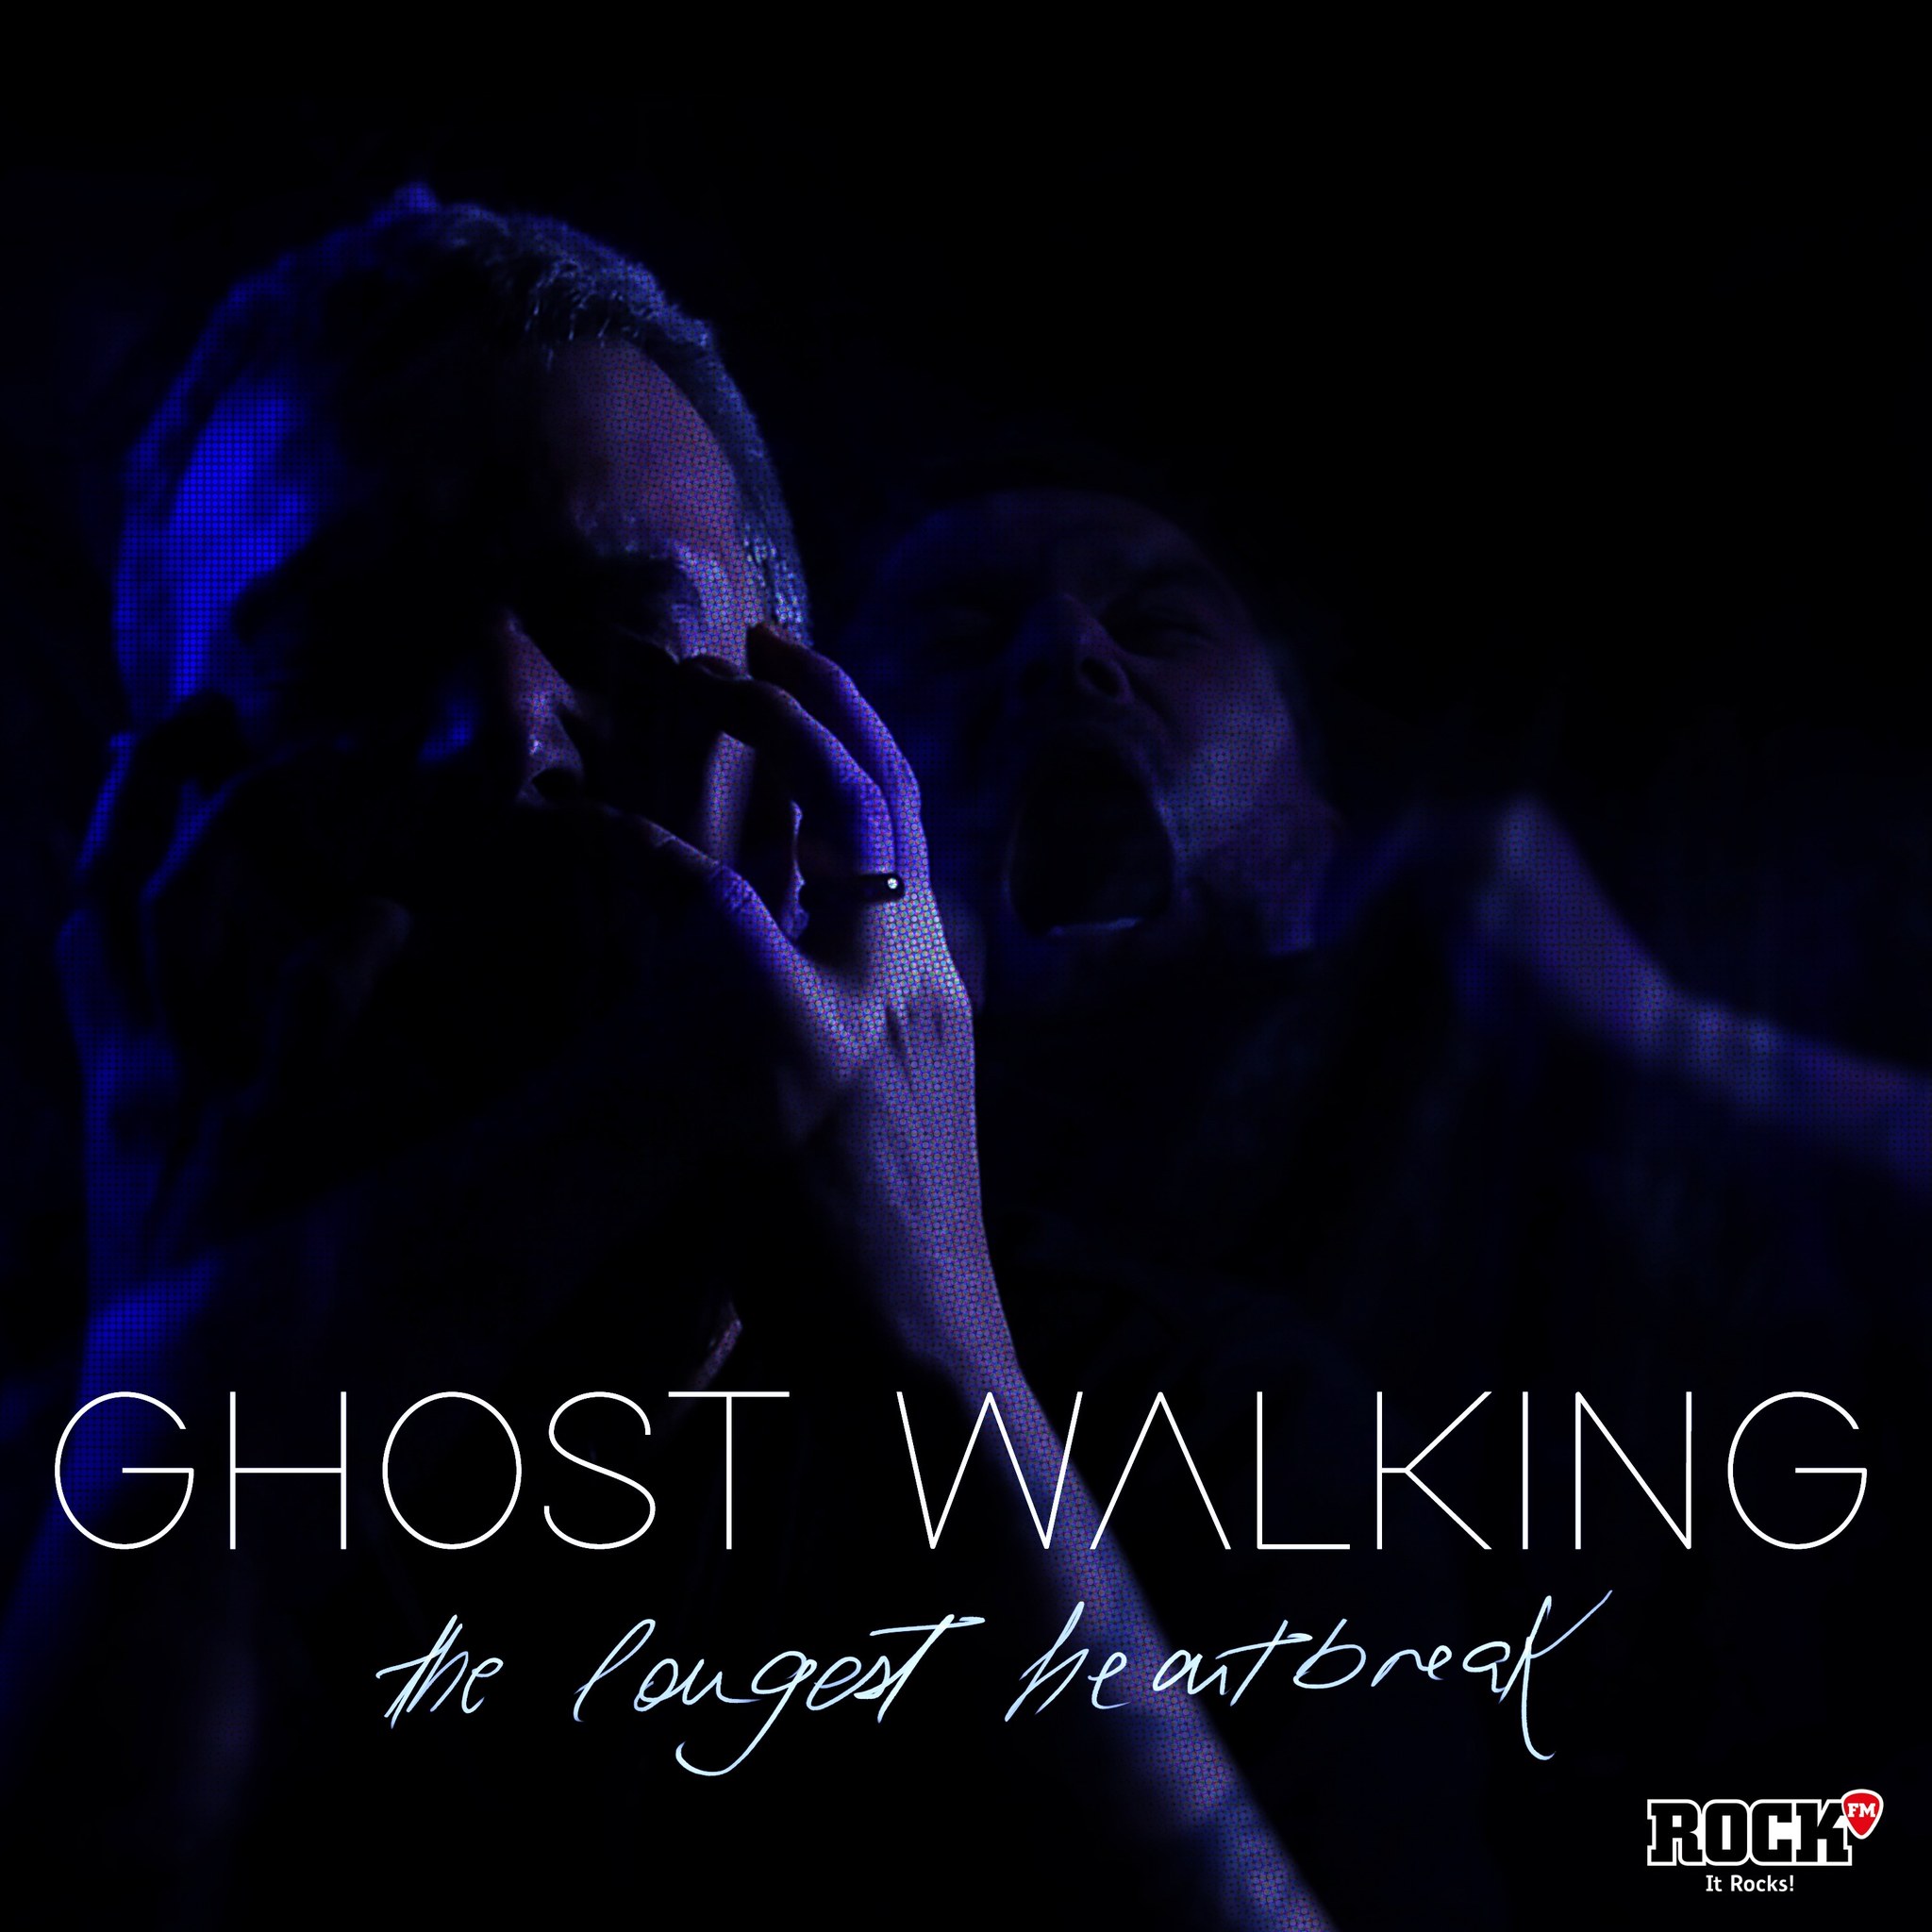 Proiectul The Longest Heartbreak a lansat piesa „Ghost Walking” feat. Mihai de la Breathelast